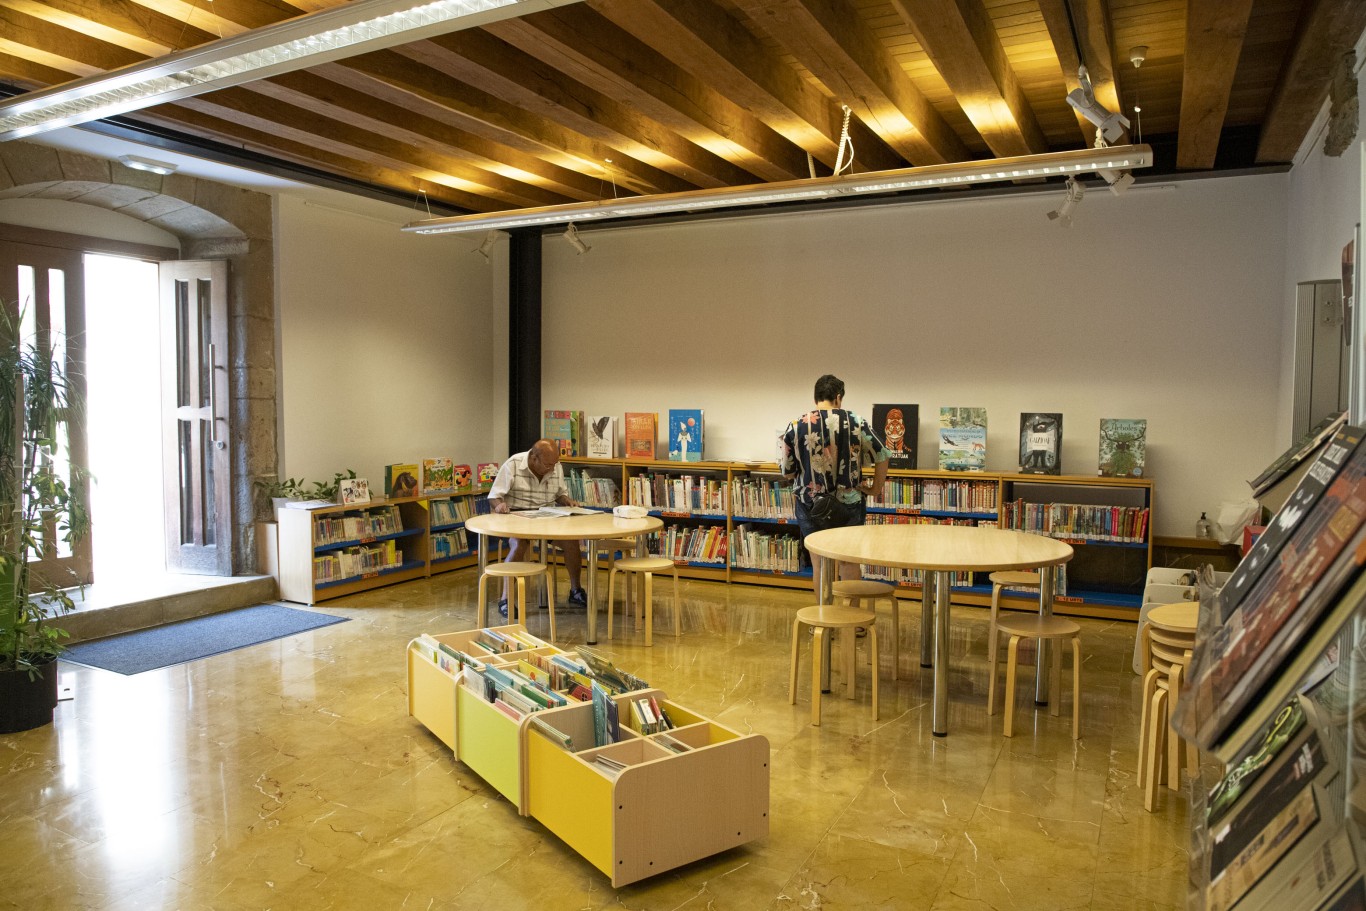 La biblioteca se traslada de forma temporal a Lobiano